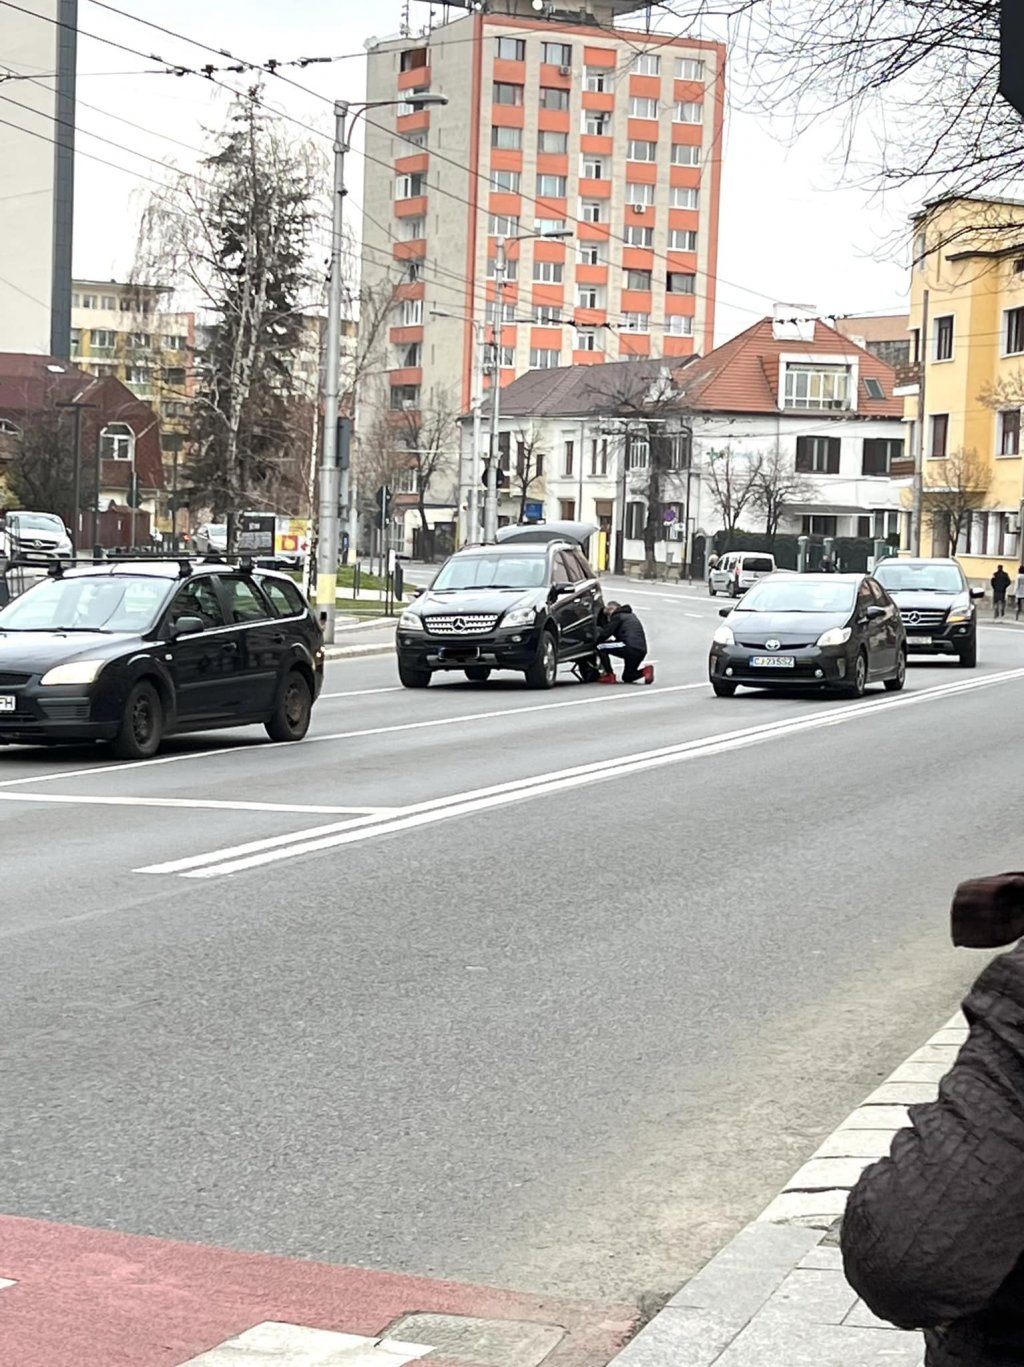 Reparaţii auto în mijlocul bulevardului cu 4 benzi din Cluj-Napoca. "Pentru că poate..."